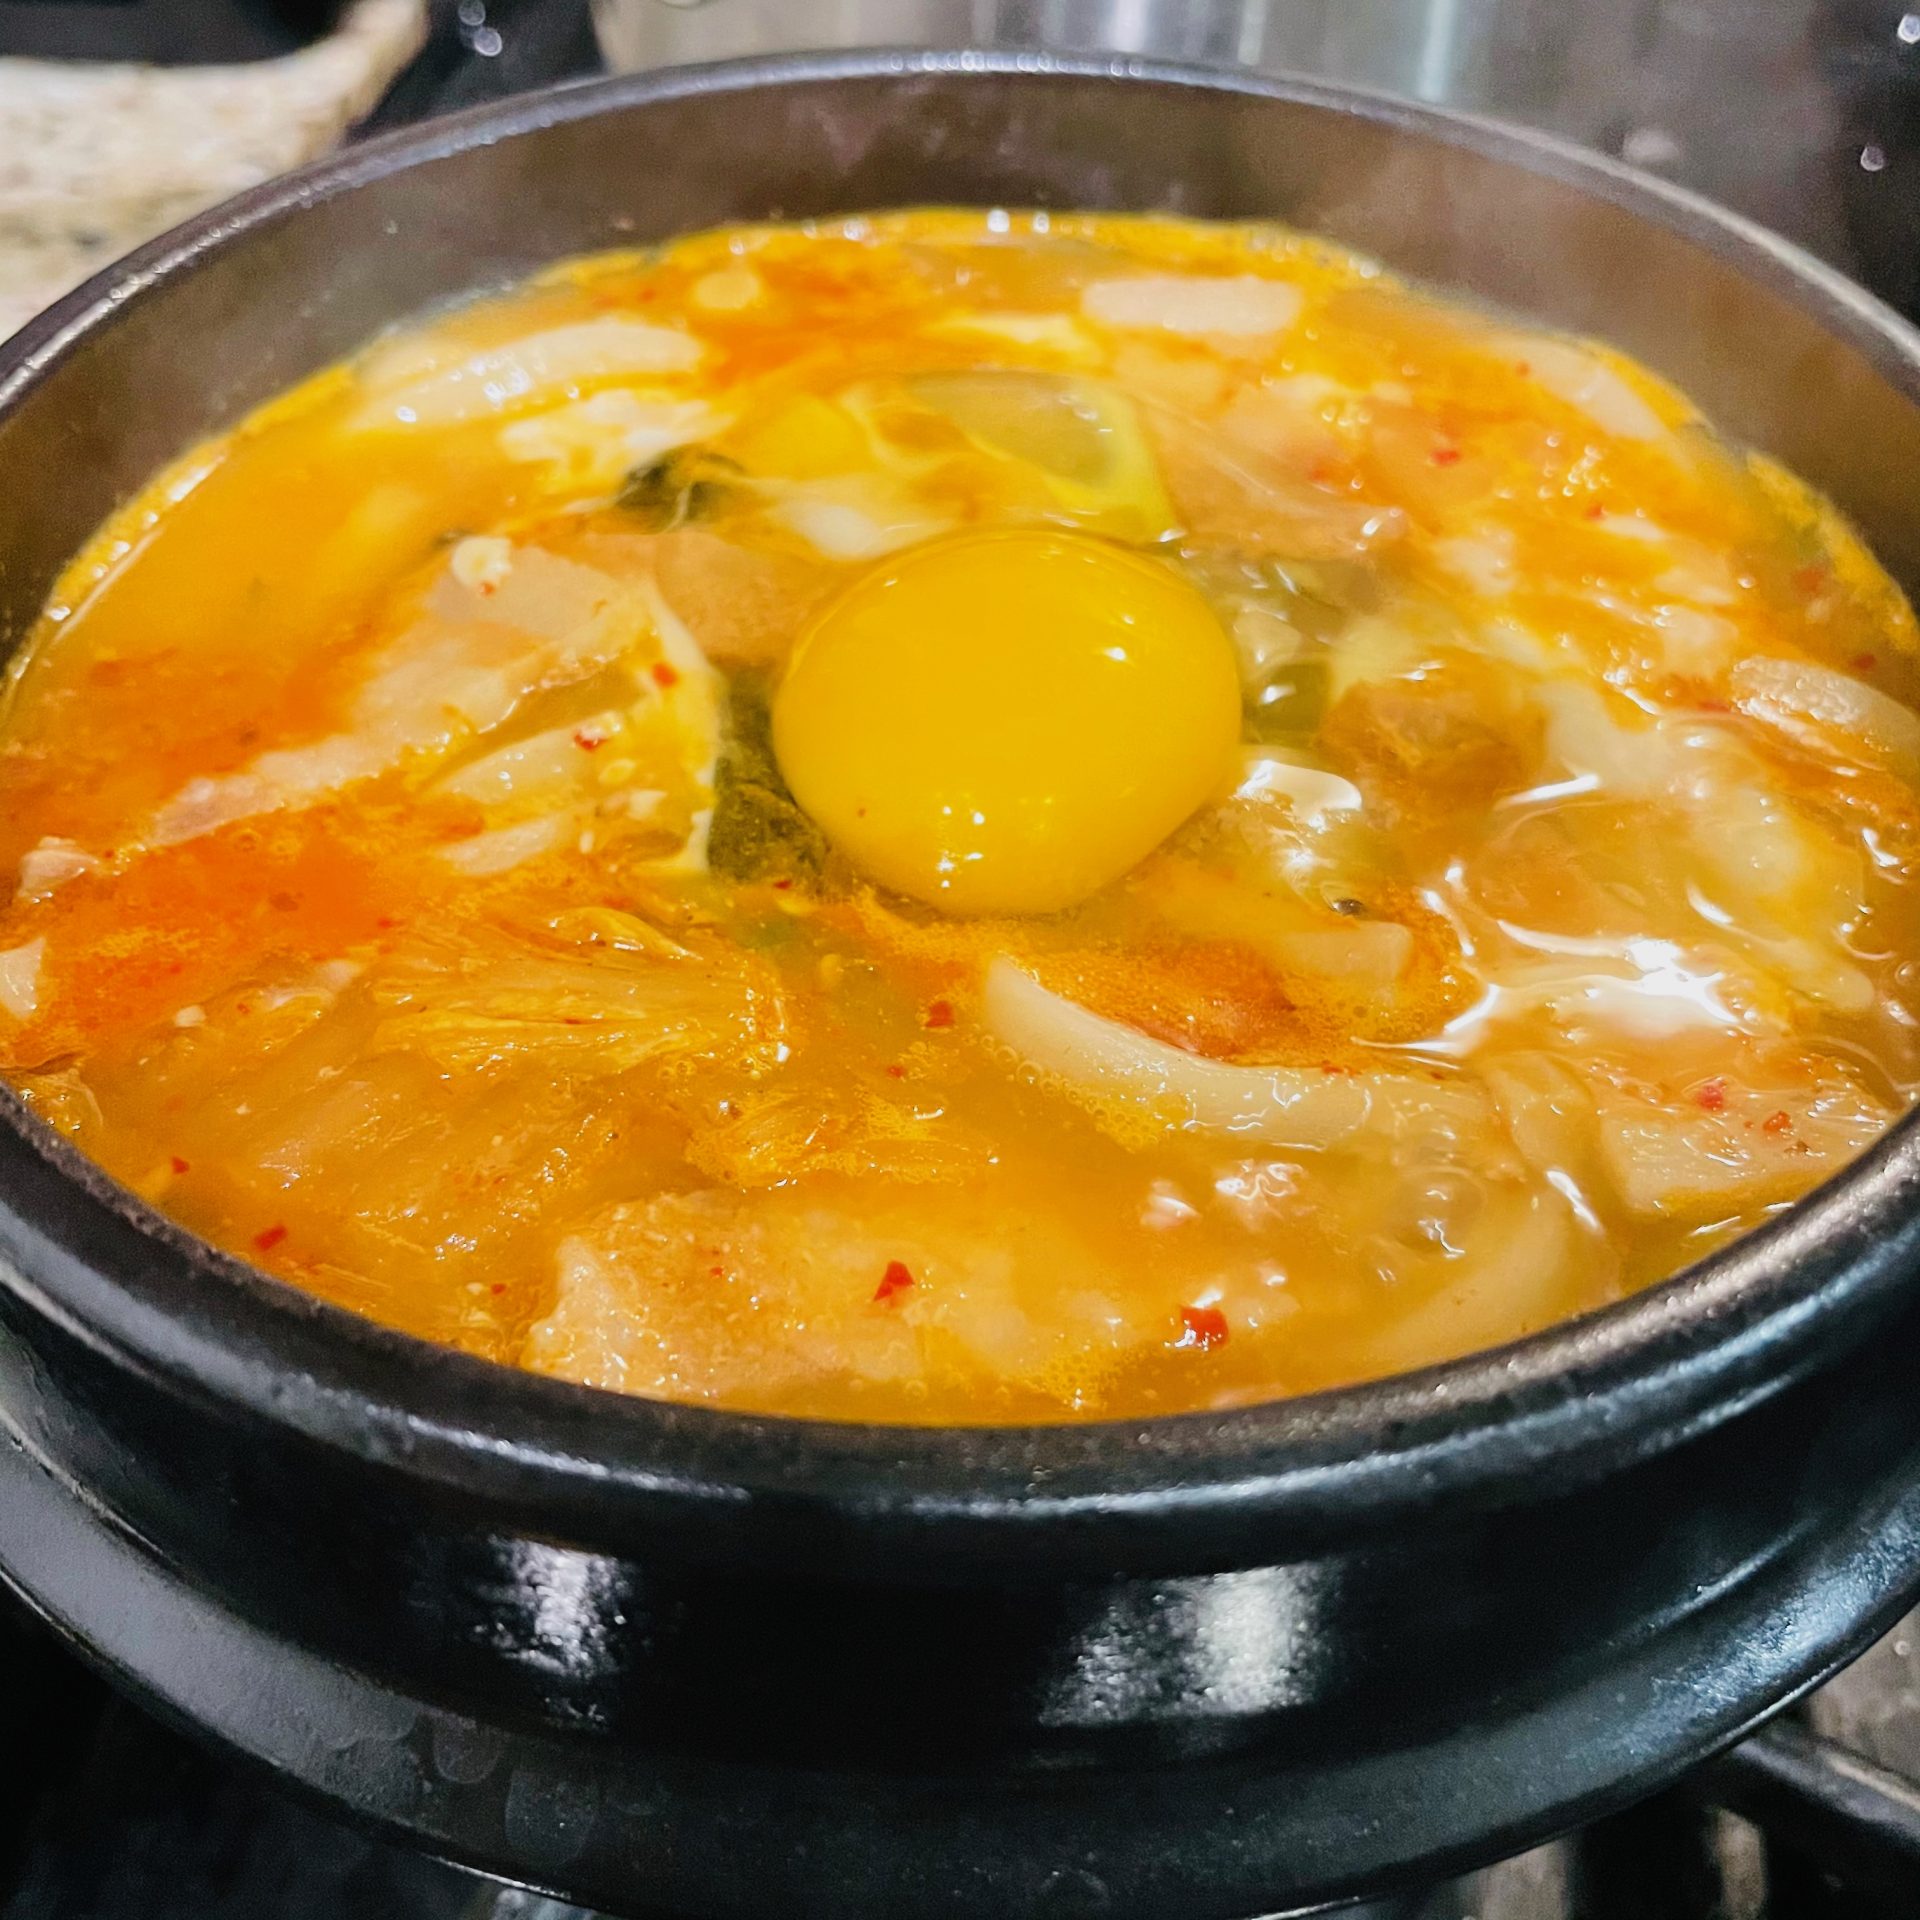 https://www.eatwithohashi.com/wp-content/uploads/2021/03/jjigae-udon-spicy-noodle-soup-eatwithohashi.jpeg